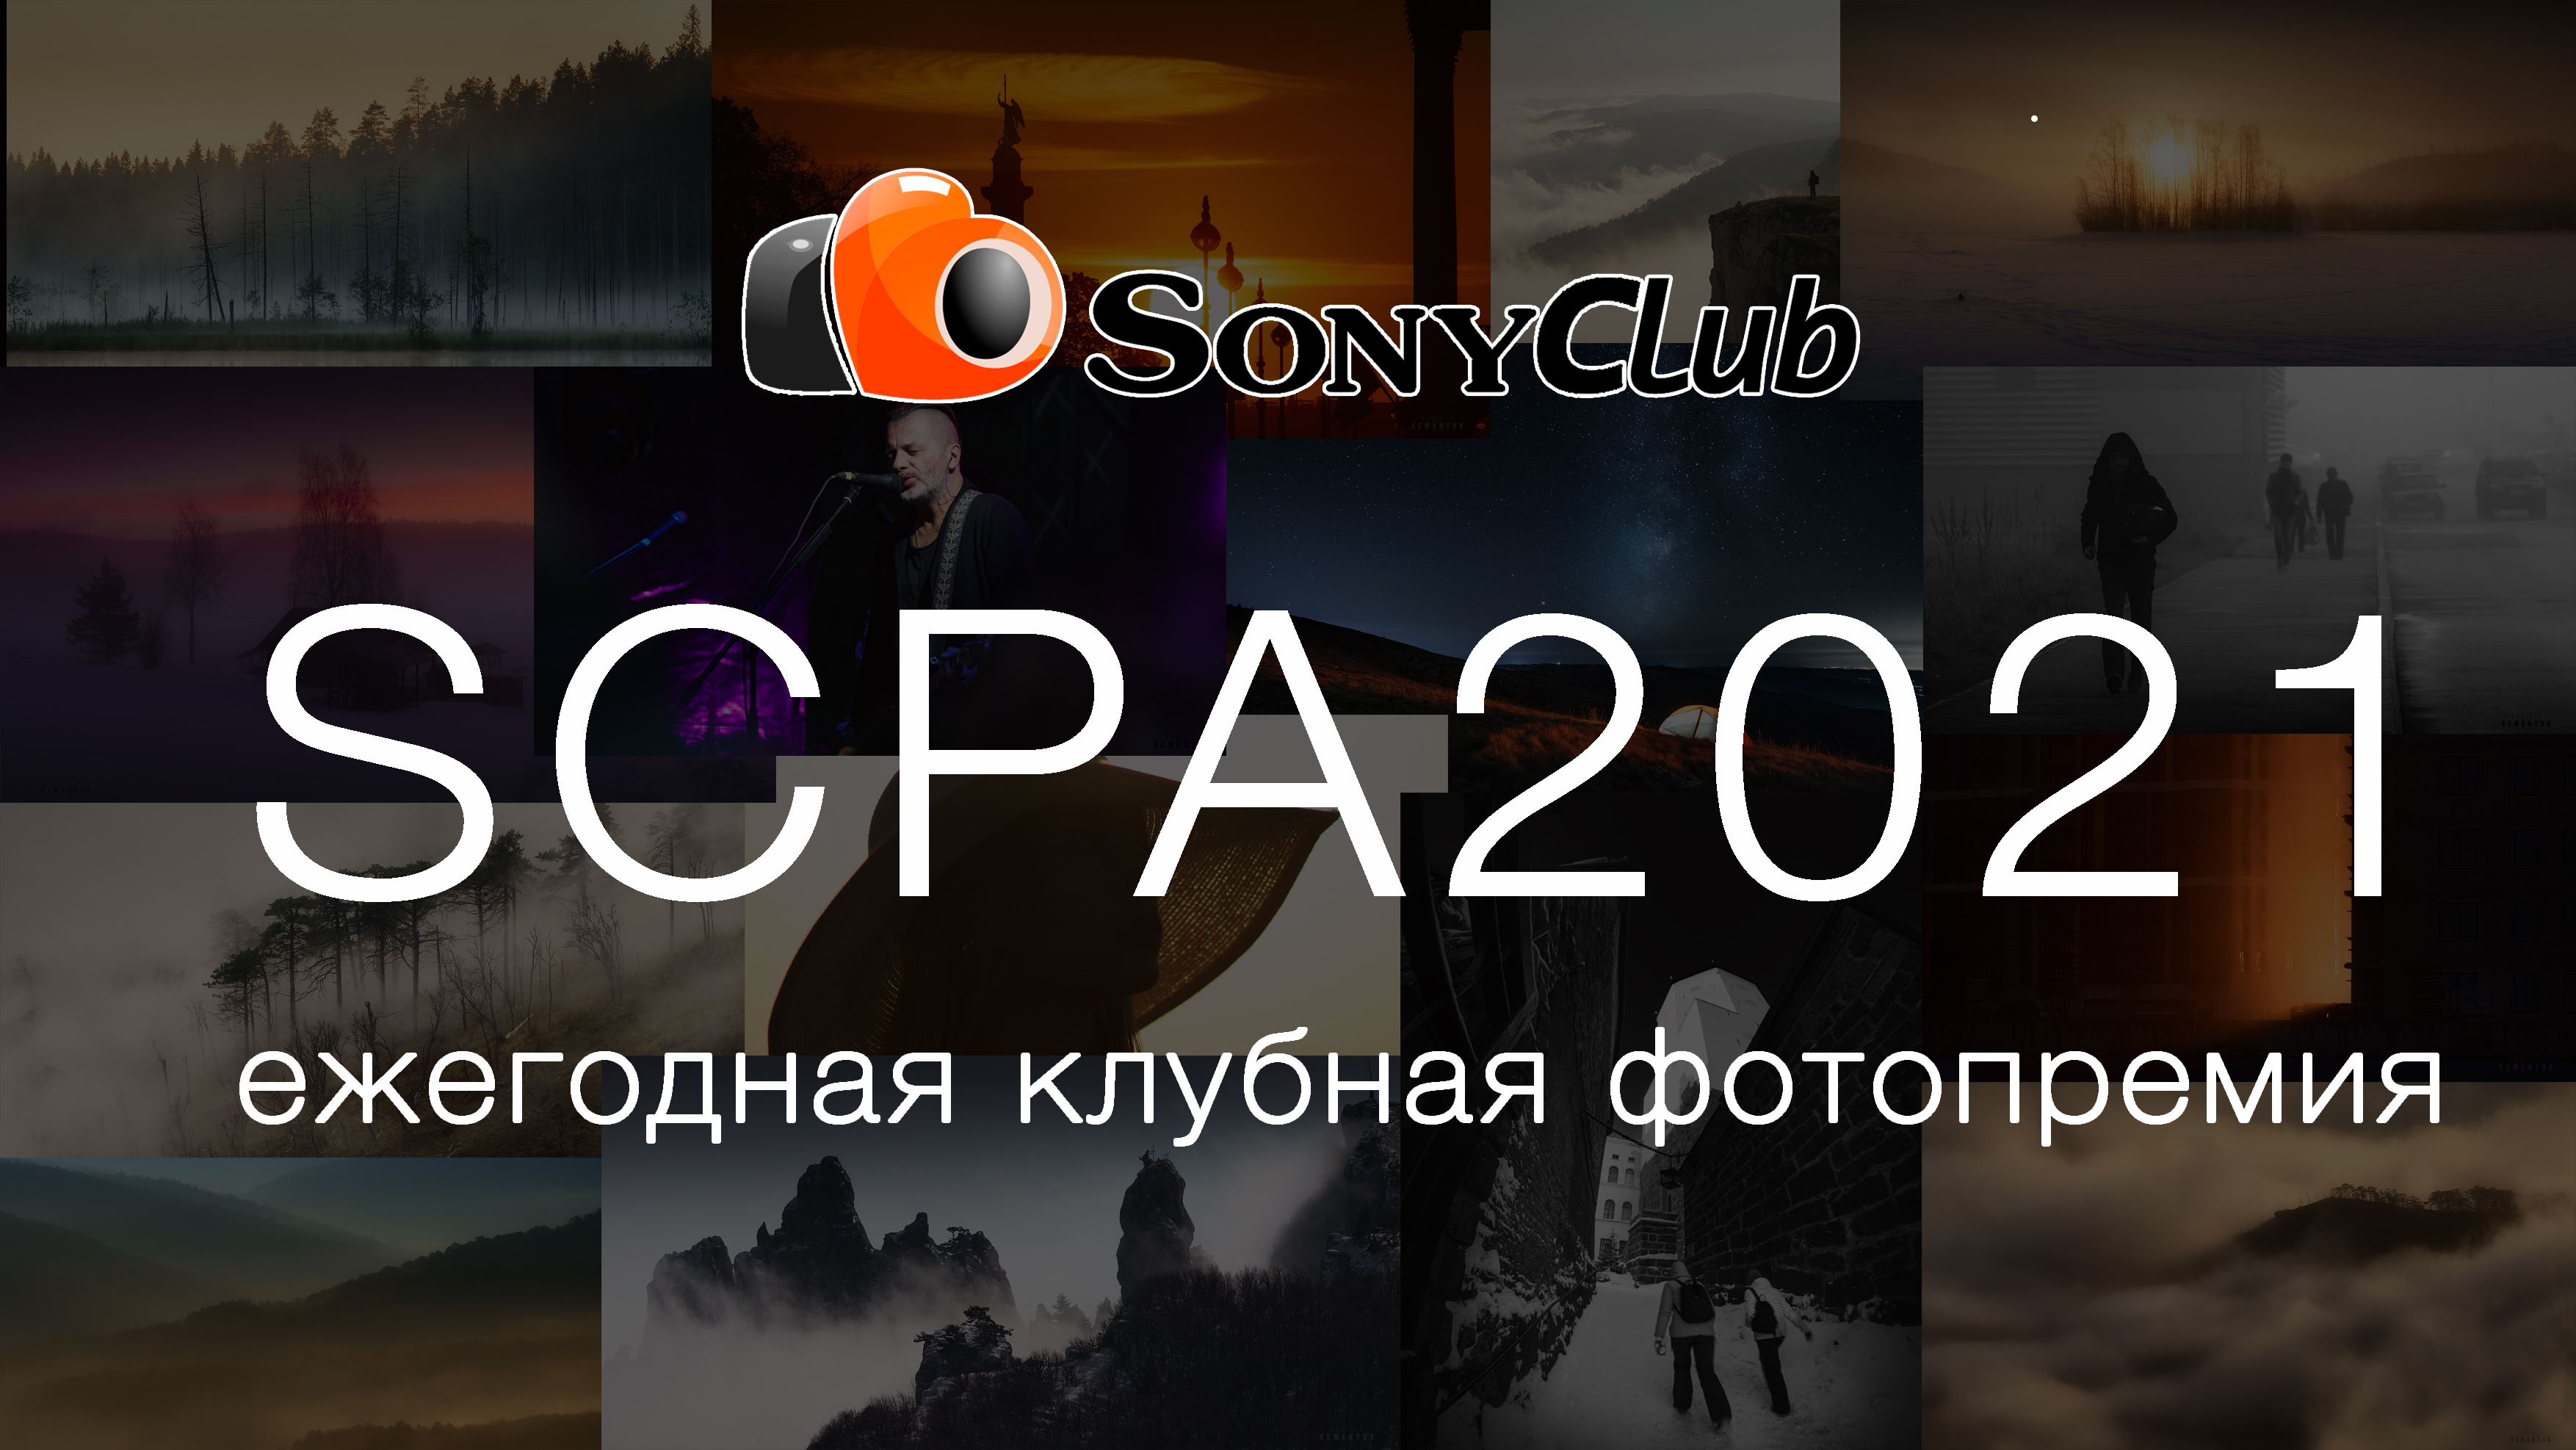 Ежегодная клубная фотопремия SCPA2021